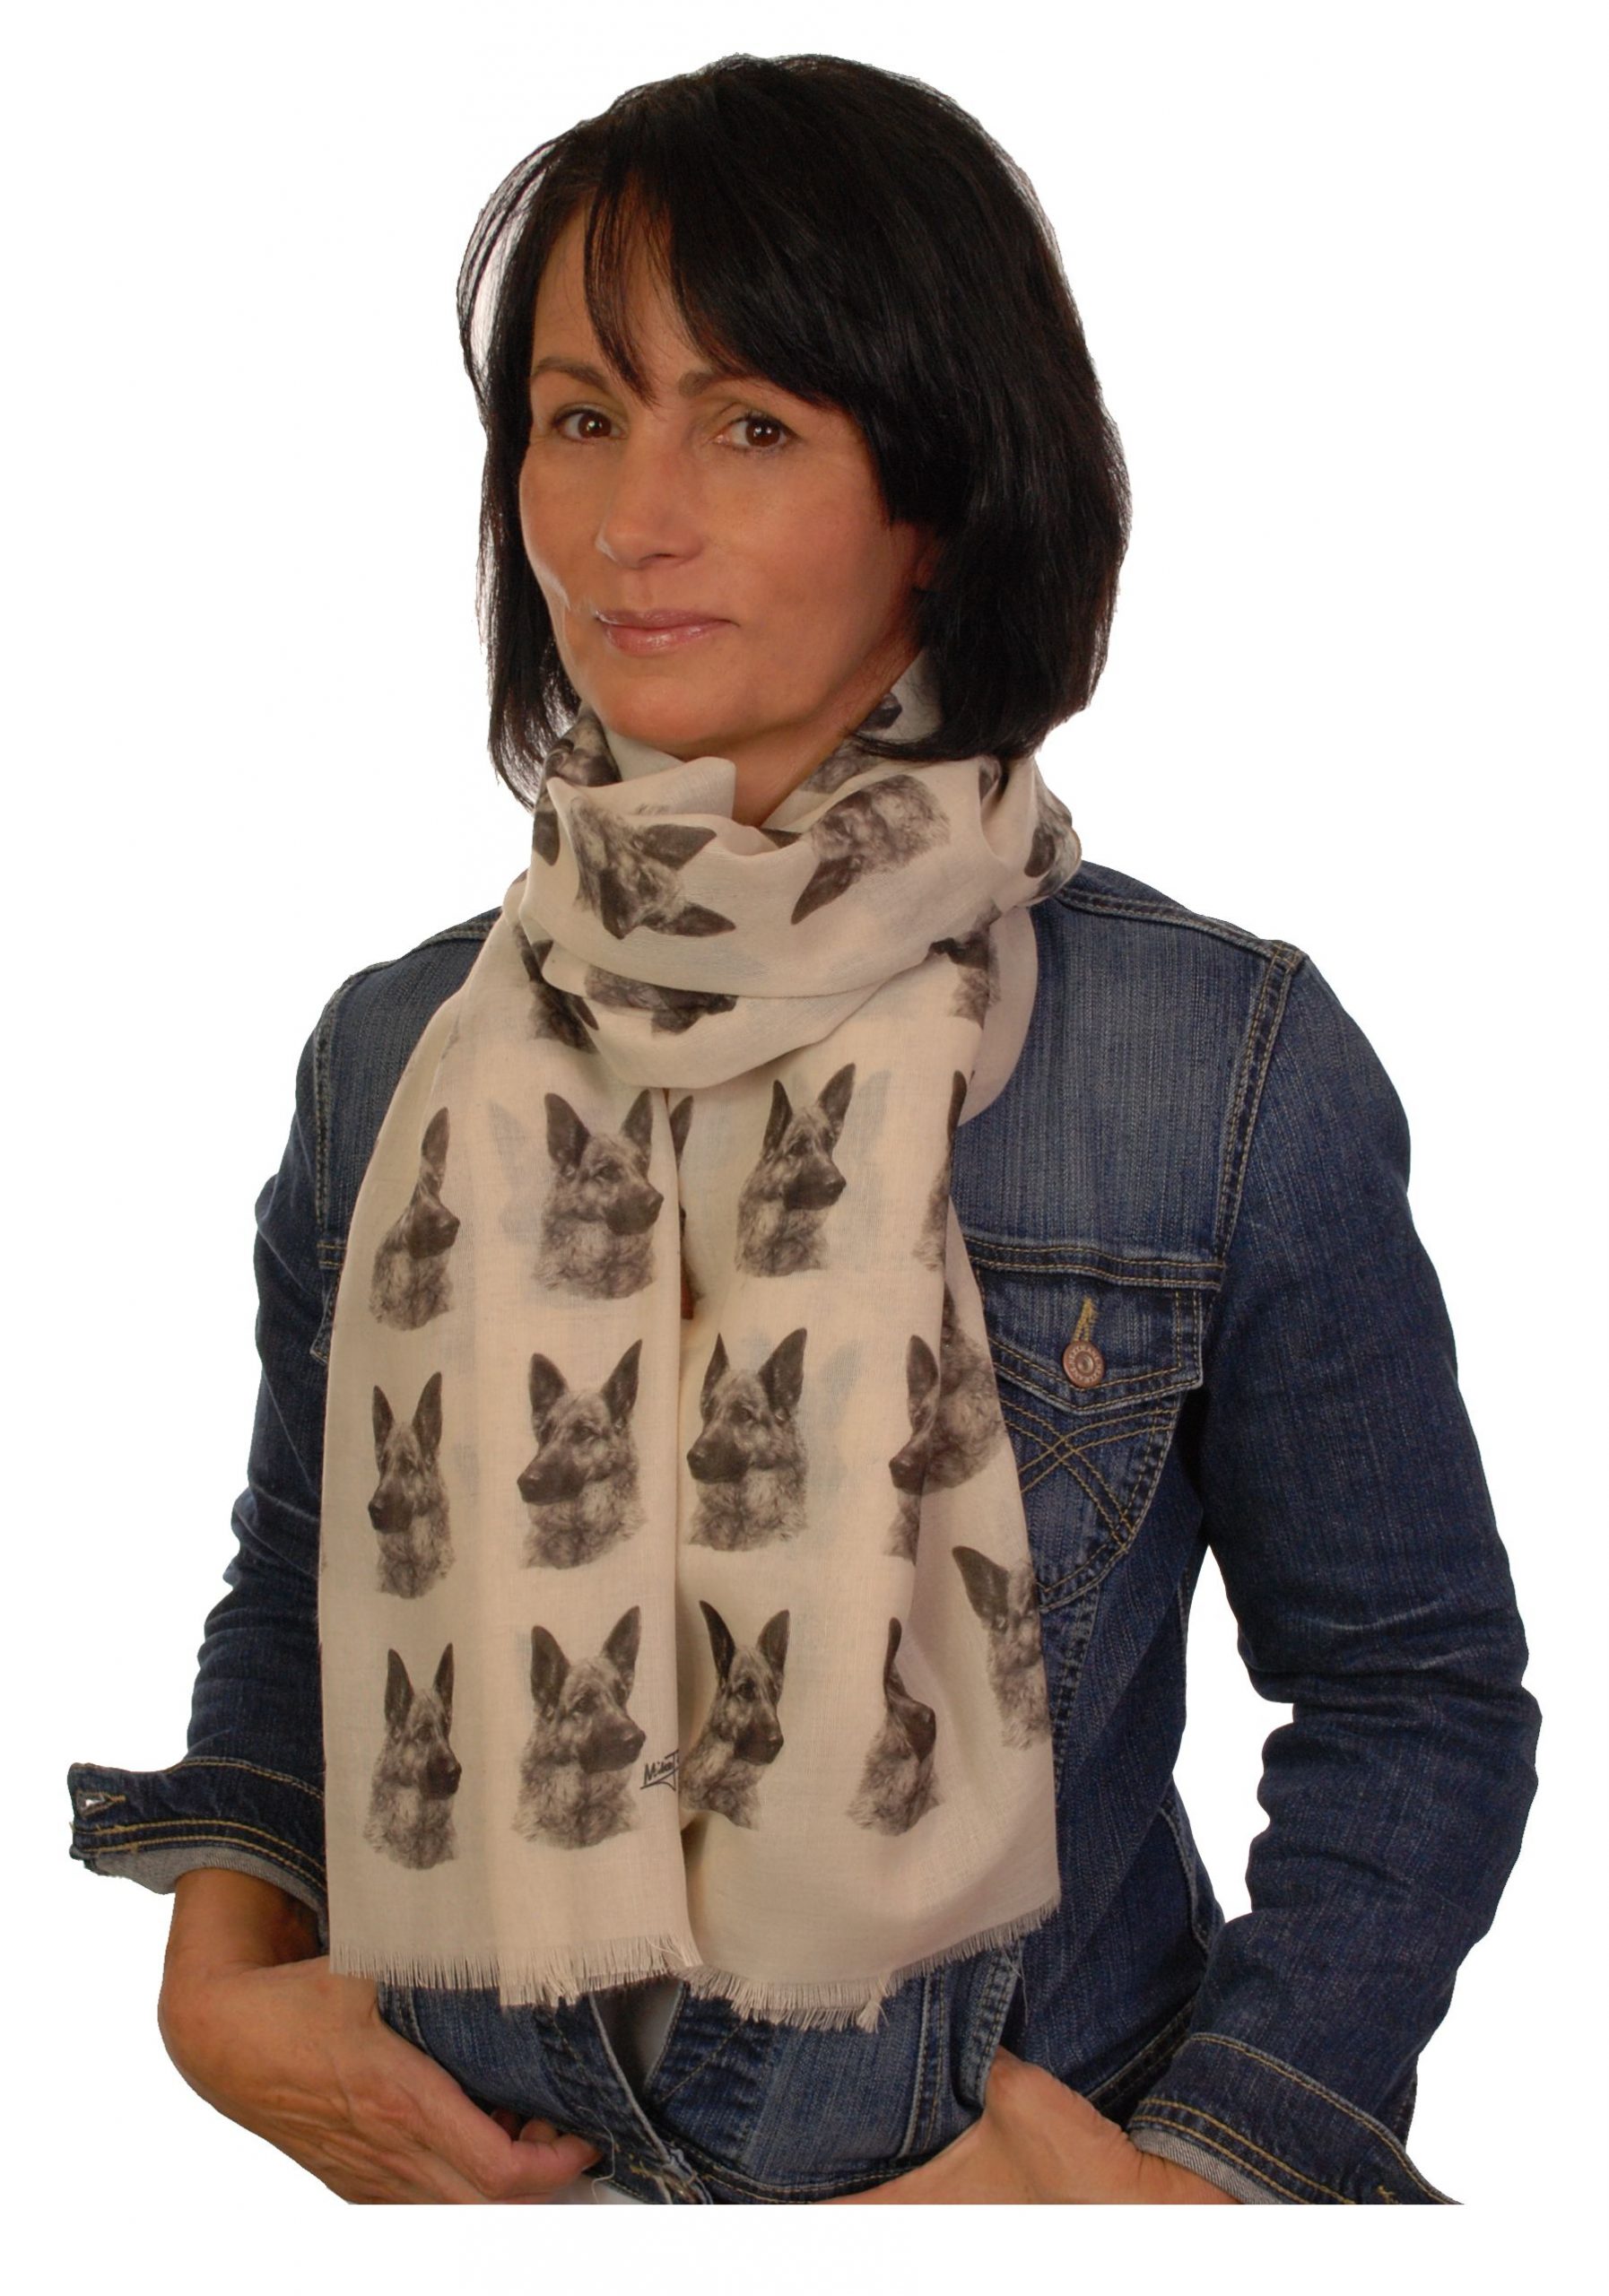 Mike Sibley German Shepherd licensed design ladies fashion scarf